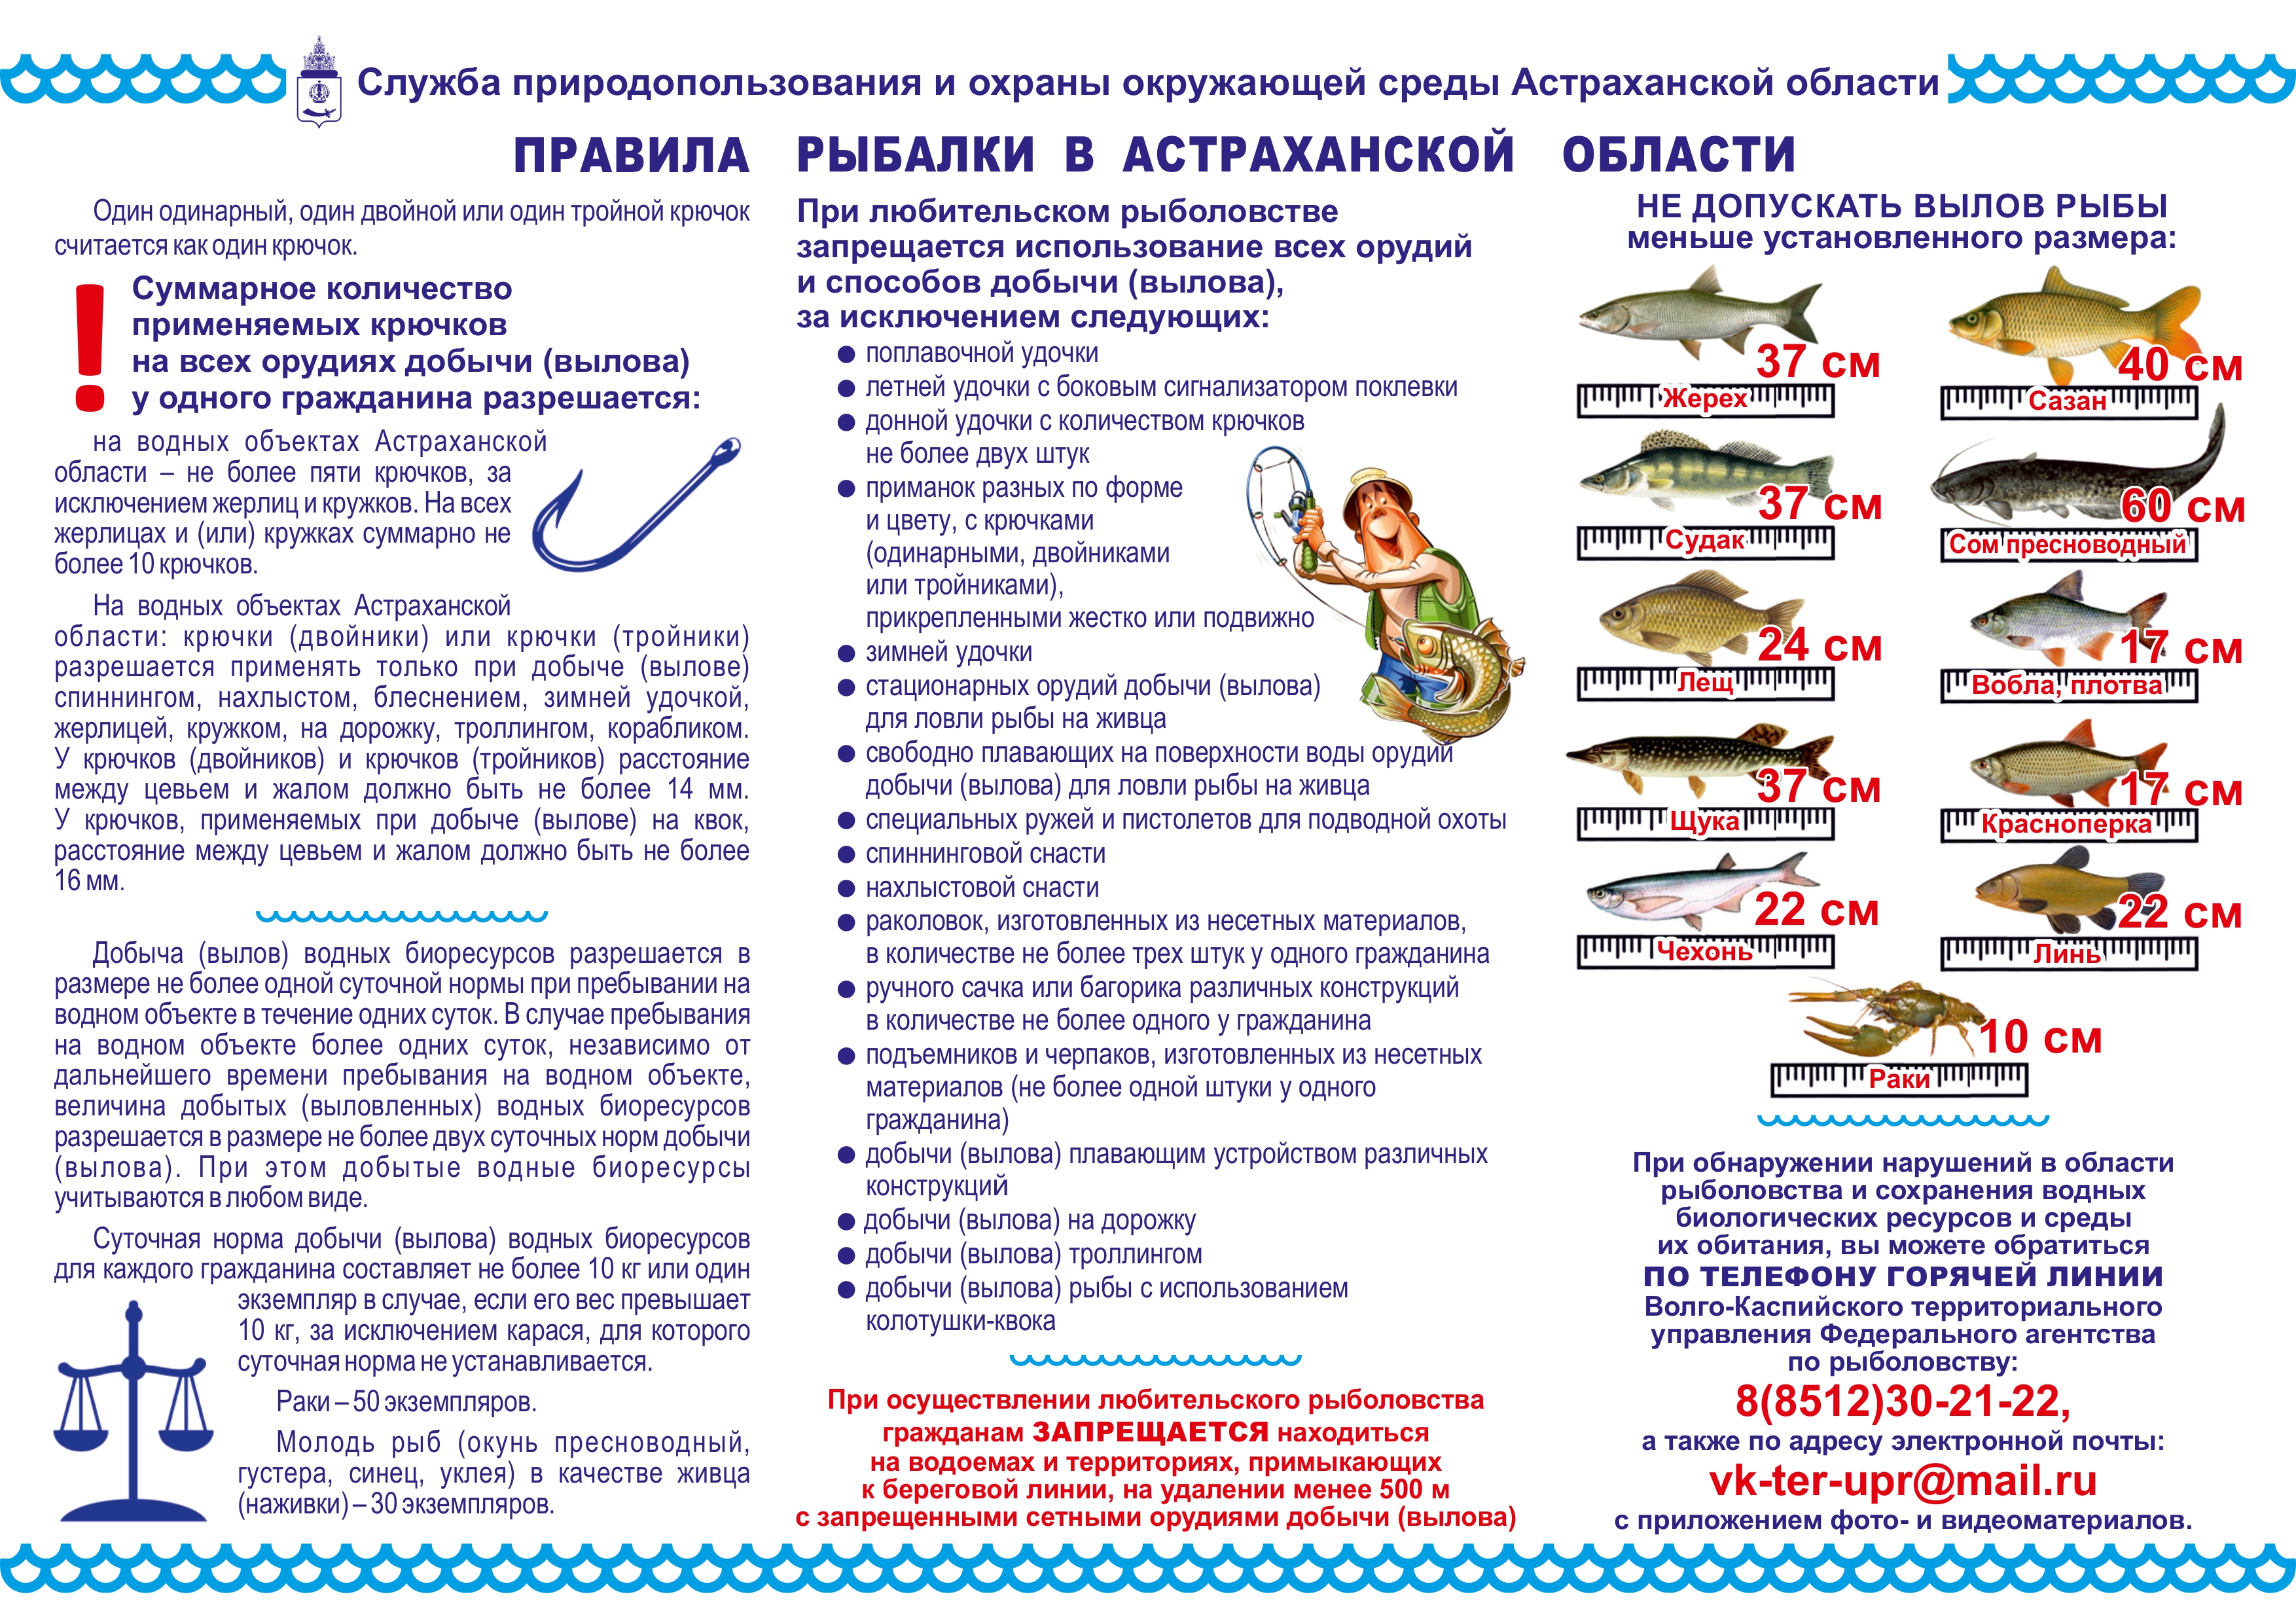 Изменения в правила рыболовства. Норма ловли рыбы в Астраханской области на 2023г. Памятки для рыбаков. Правила рыбалки. Памятка рыбака.